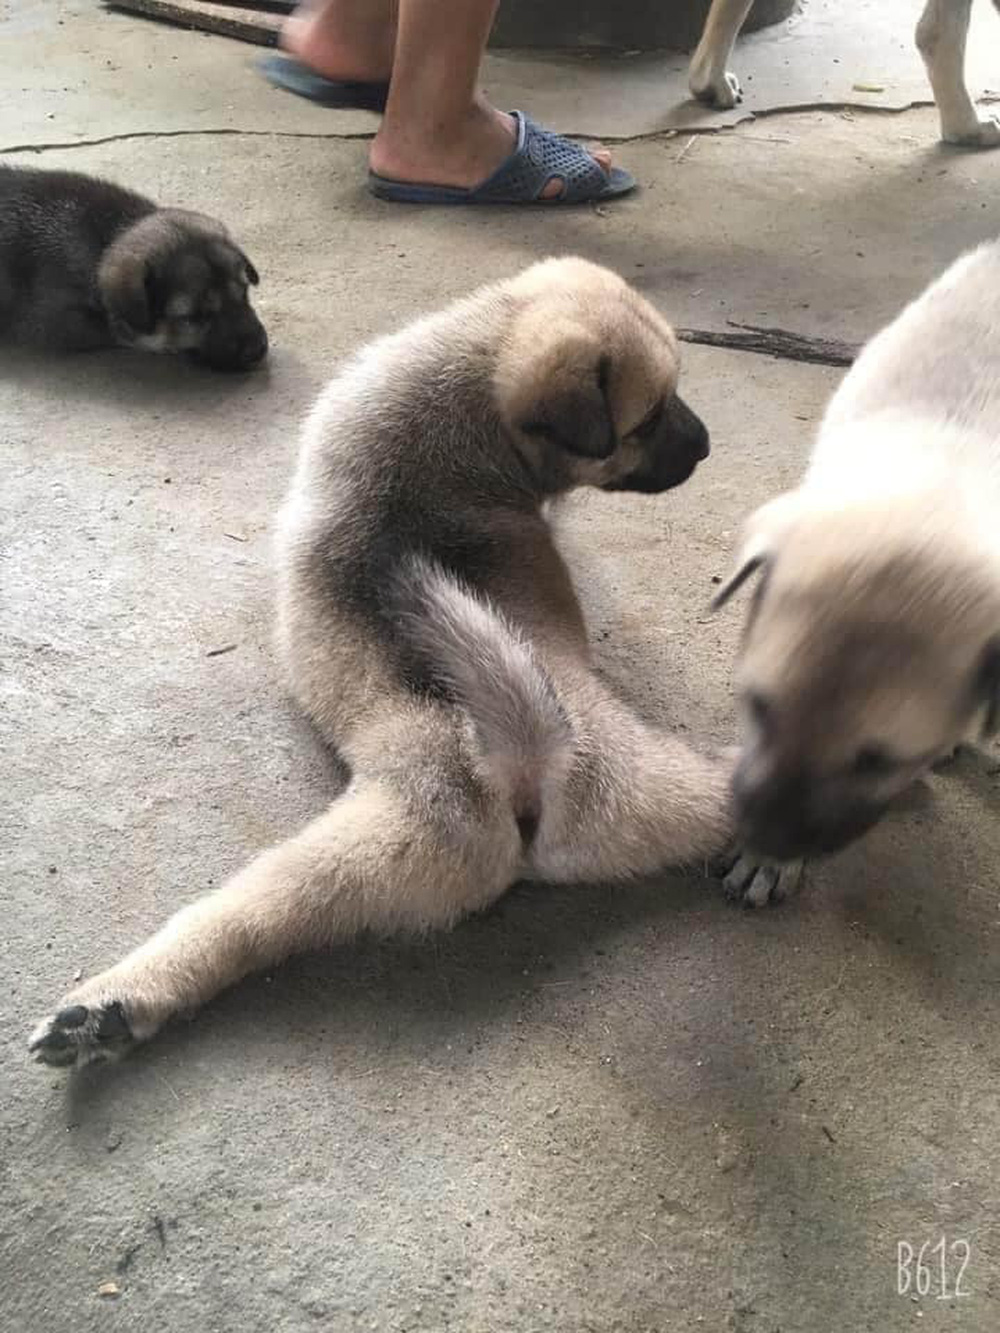 Chú chó con biểu diễn tuyệt kỹ xoạc chân khiến hội chị em ngỡ ngàng, xấu hổ vì đi tập yoga cũng không dẻo bằng em cún - Ảnh 3.